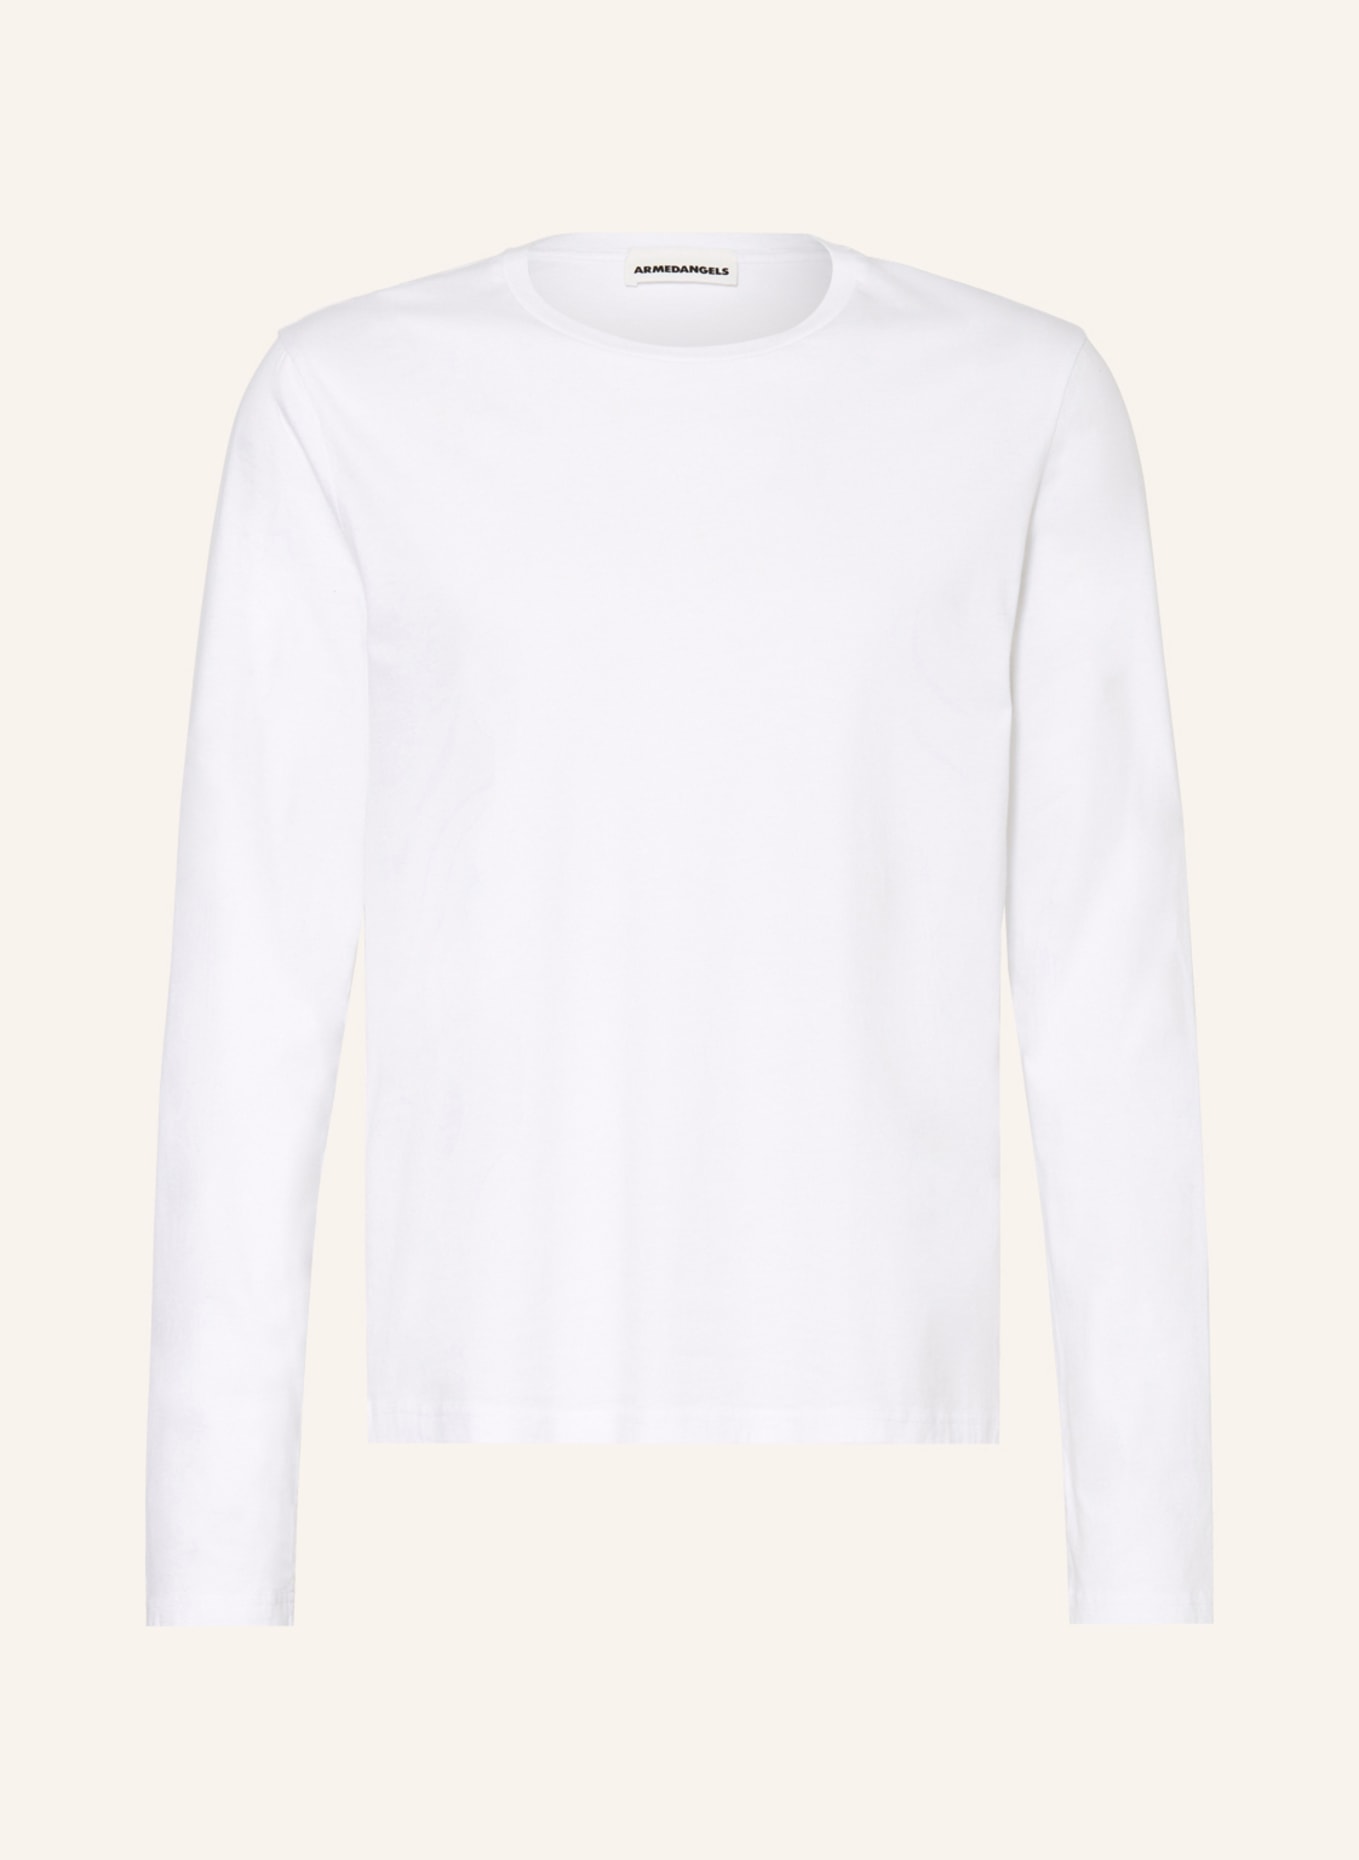 ARMEDANGELS Long sleeve shirt AALBIE, Color: WHITE (Image 1)